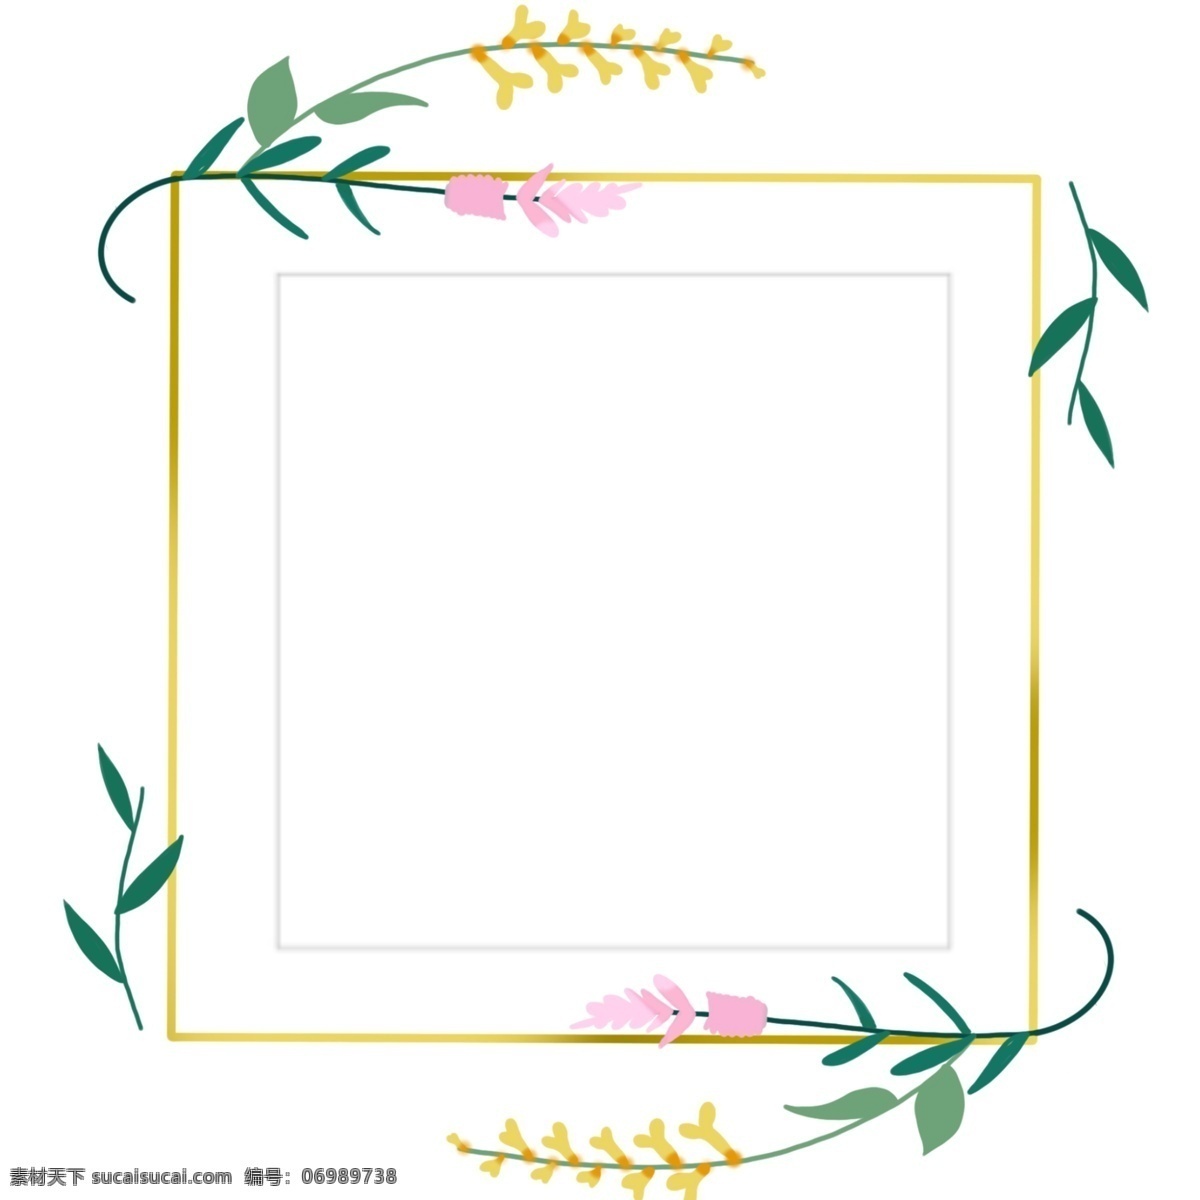 绿色 叶子 婚礼 边框 绿色的边框 婚礼边框 漂亮的边框 创意边框 方形边框 黄色的边框 植物边框